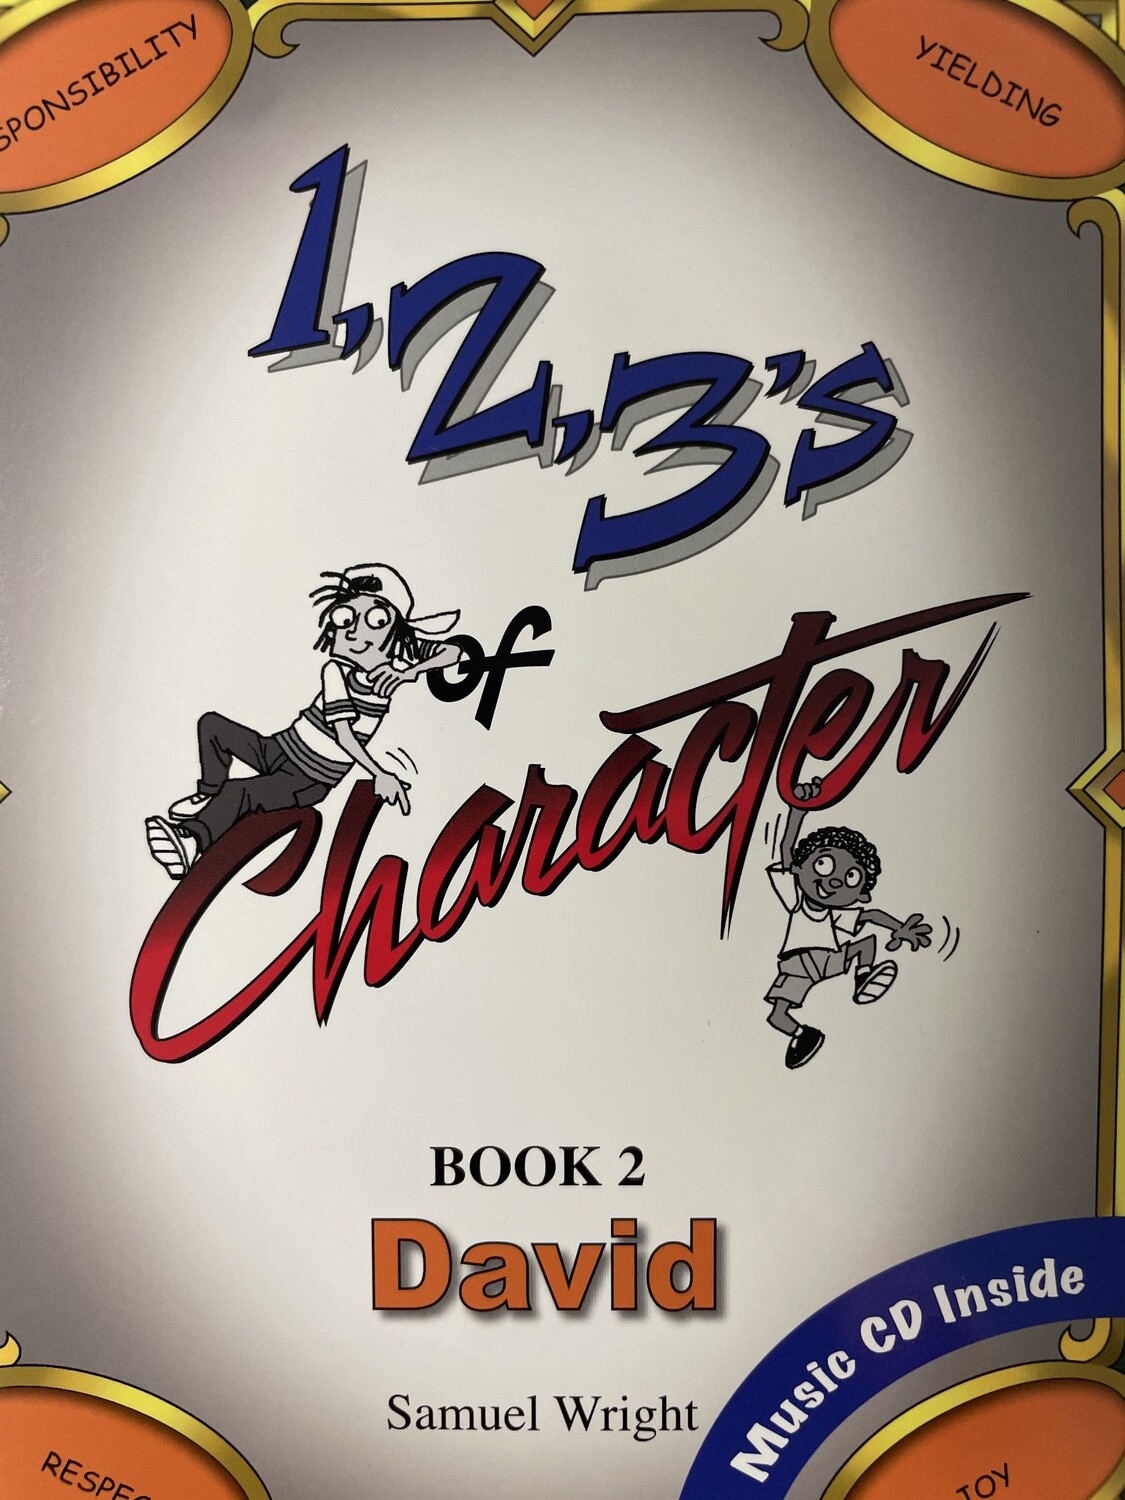 1, 2, 3’s of Character — David